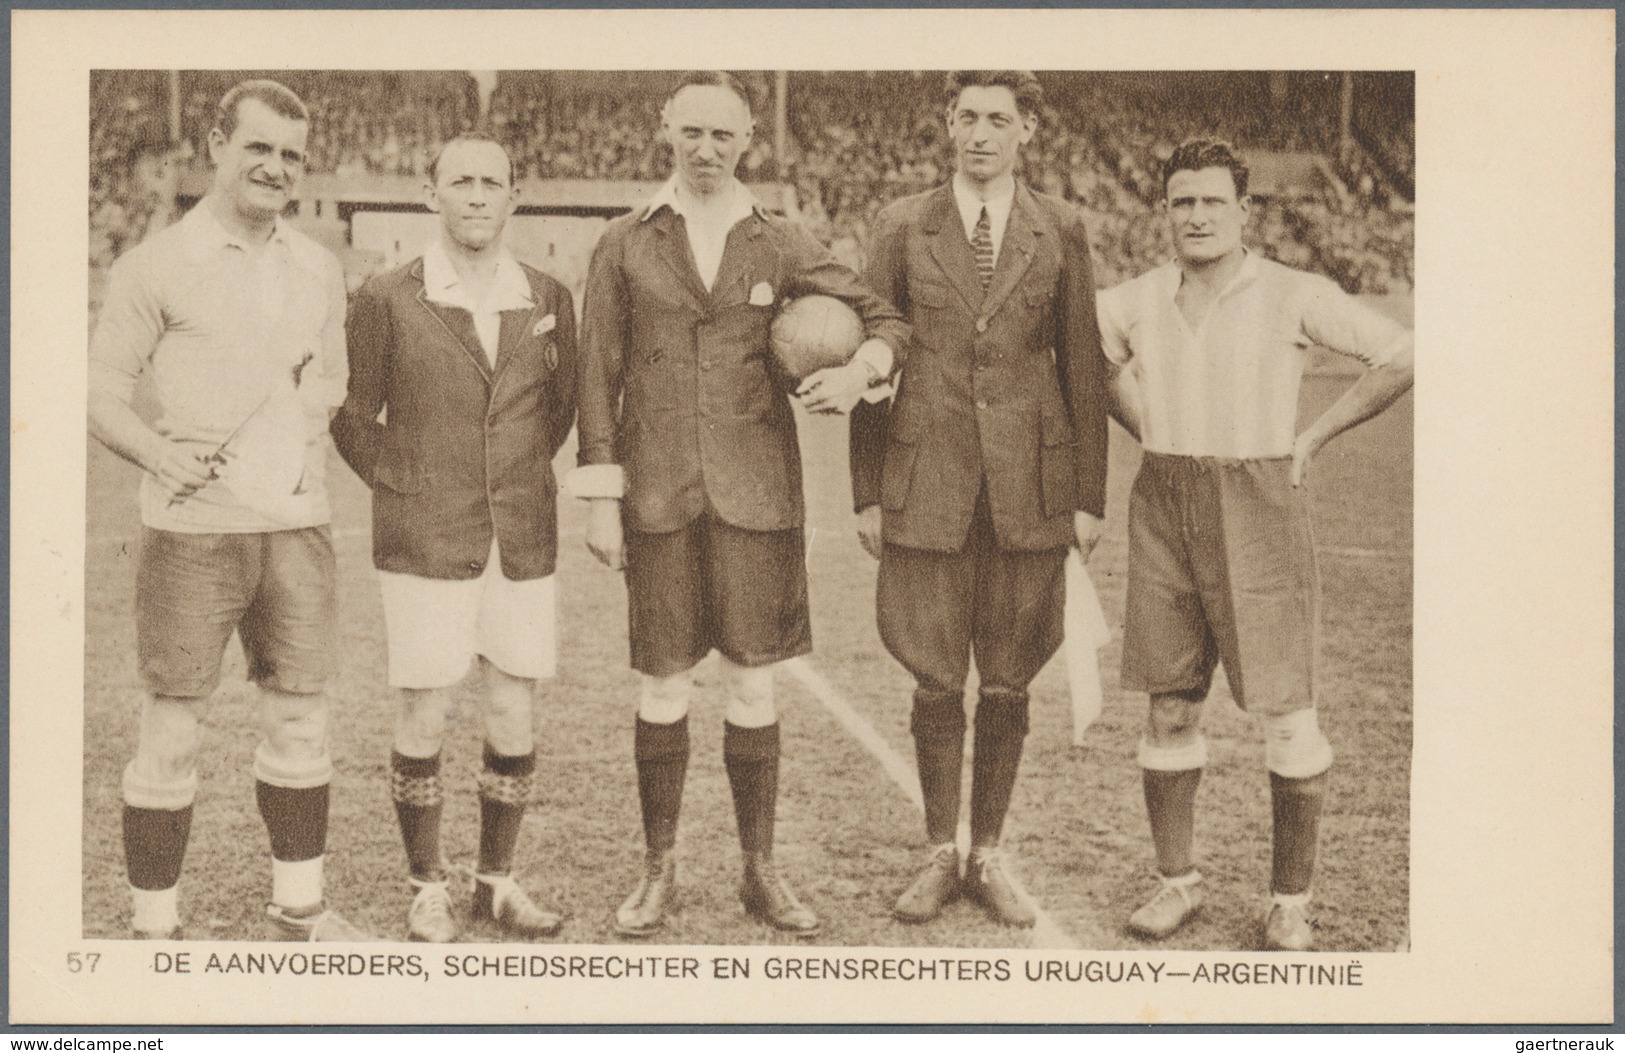 10917 Thematik: Sport-Fußball / sport-soccer, football: 1928, Olympische Spiele 1928 - Amsterdam, vier off